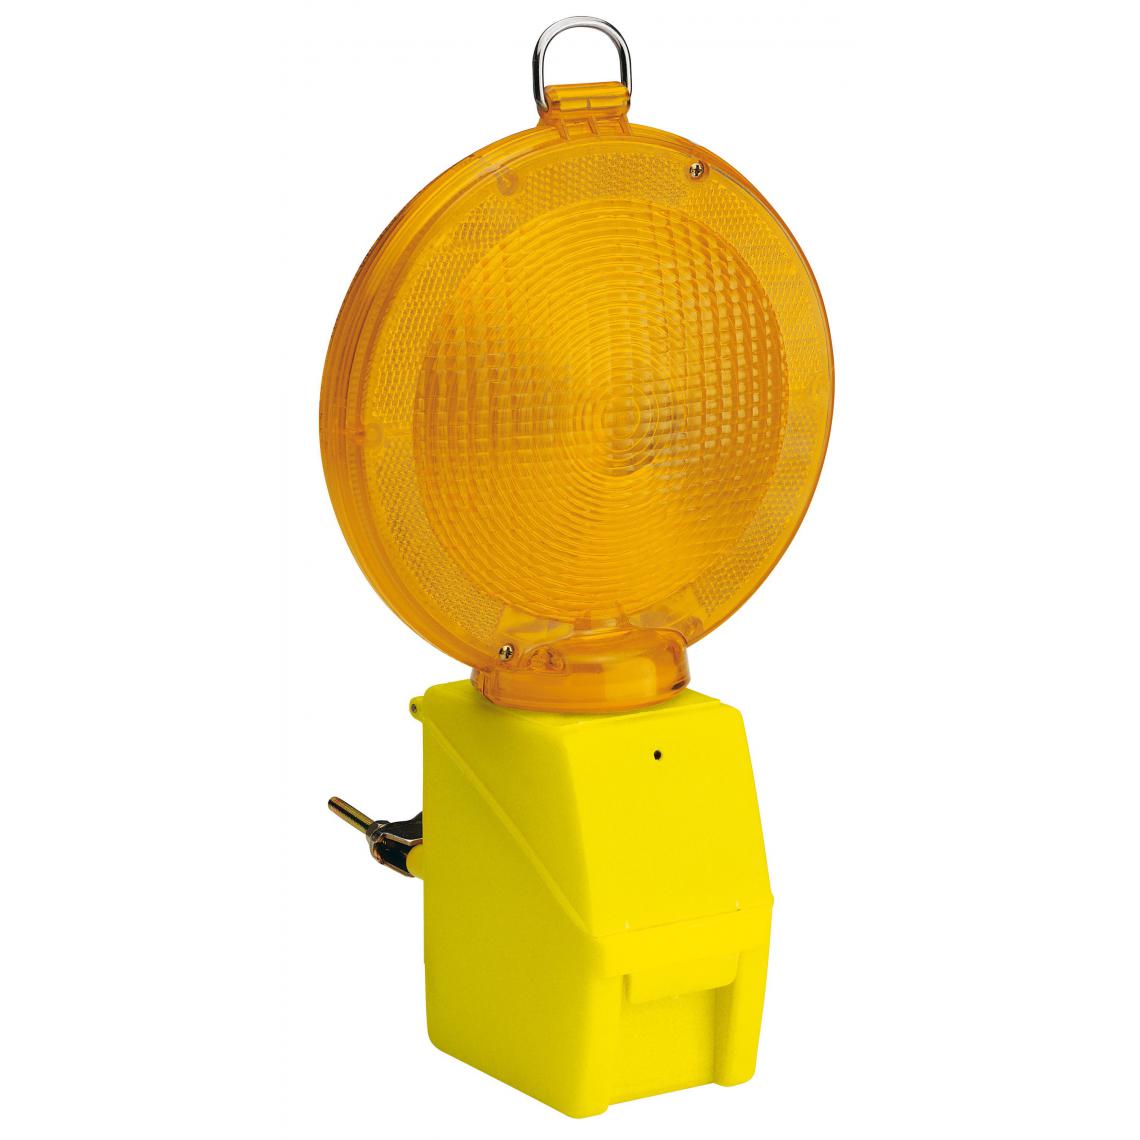 Velamp - Lampe clignotante de chantier avec capteur crépusculaire - Projecteur de chantier